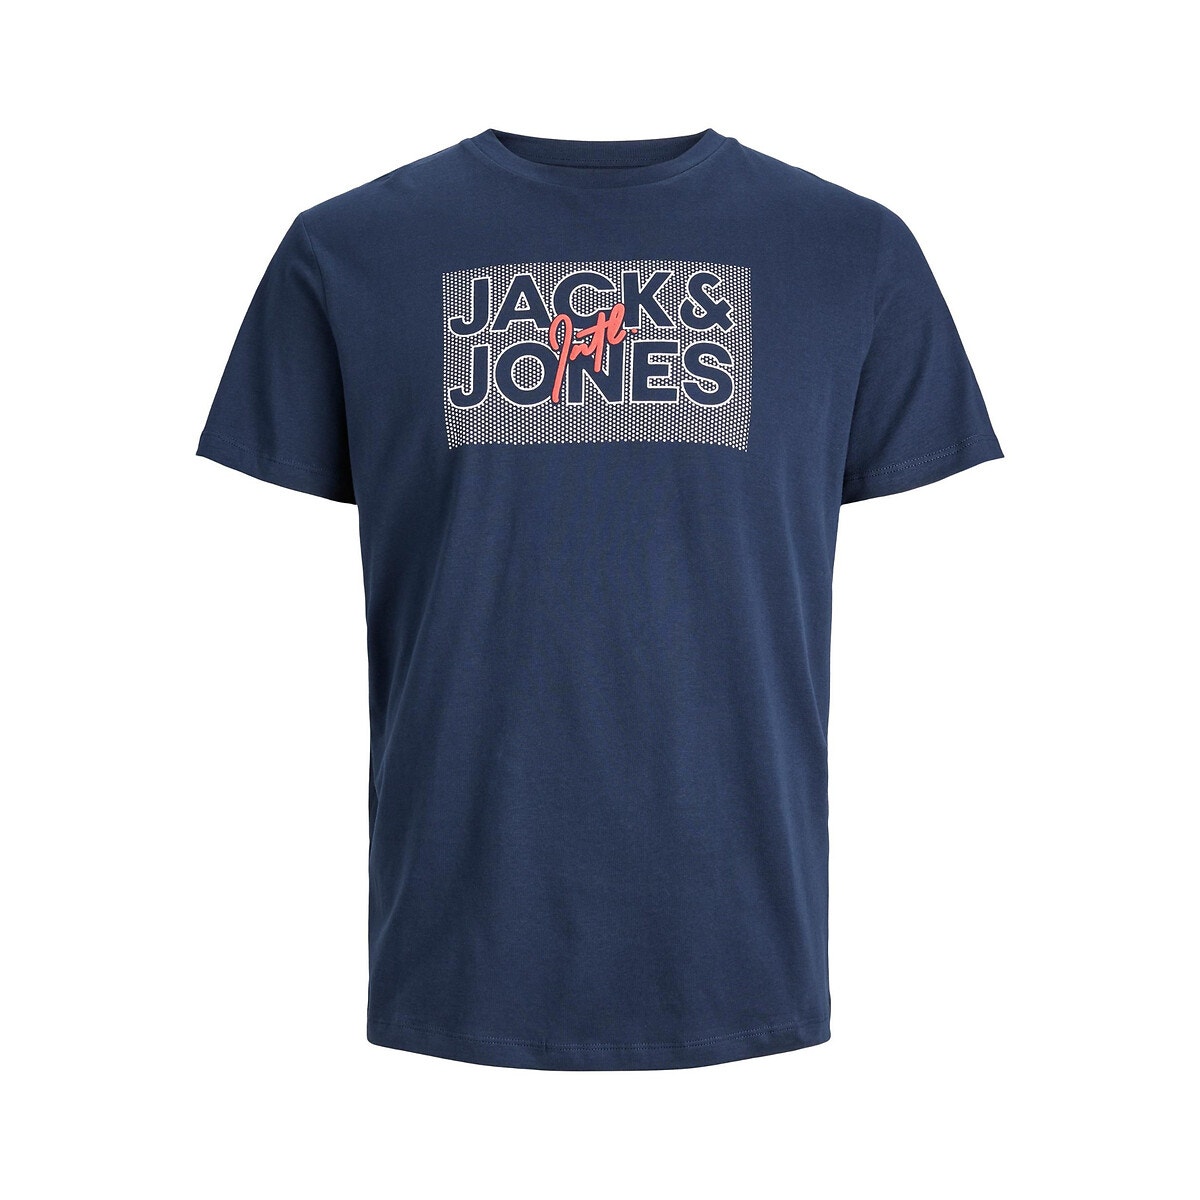 Κοντομάνικο T-shirt με στρογγυλή λαιμόκοψη, Jjmarius